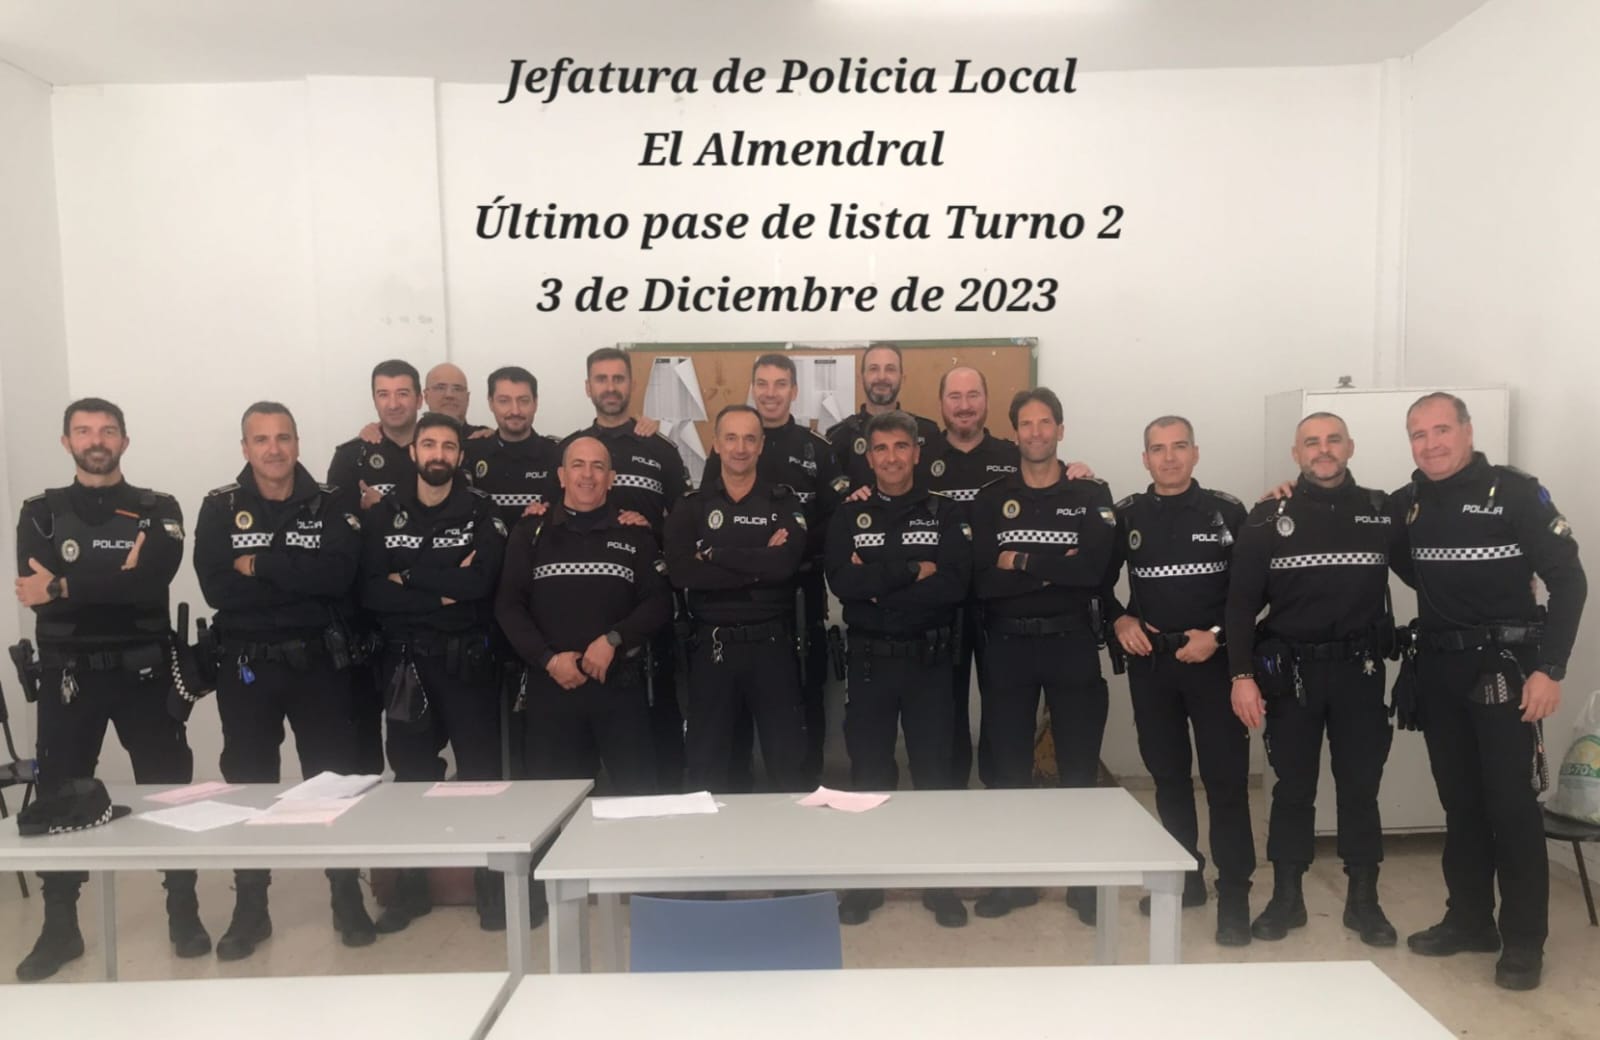 El último turno en la Jefatura de Policía Local de El Almendral.